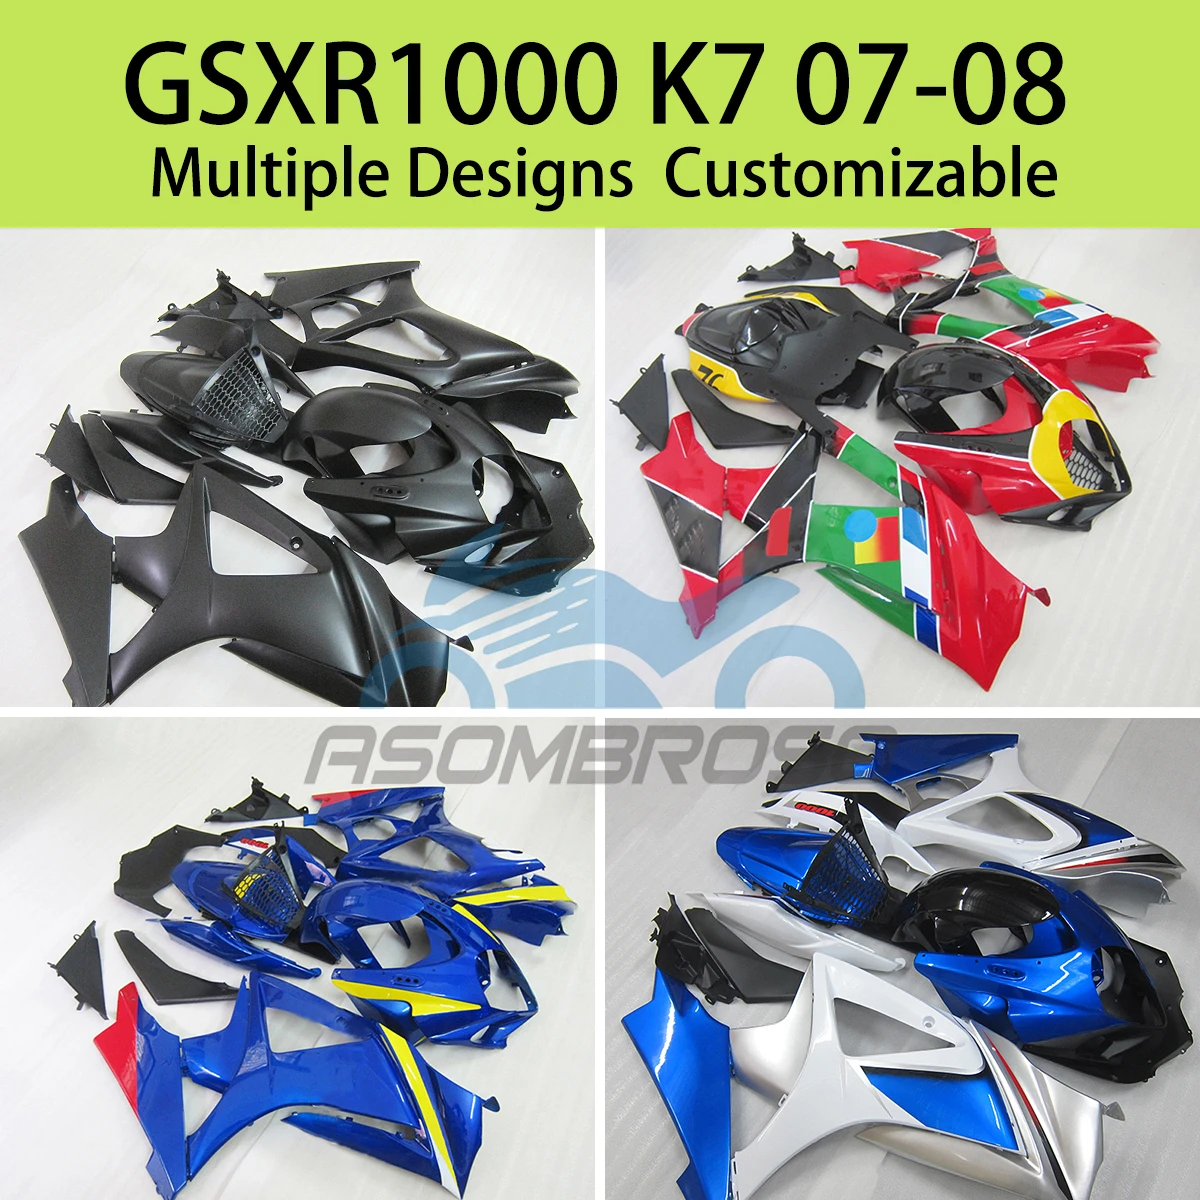 

GSXR 1000 07 08 Fairings Motorcycle for SUZUKI GSXR1000 K7 2007 2008 ABS Fairing Set Panel Kit Bodywork Fit